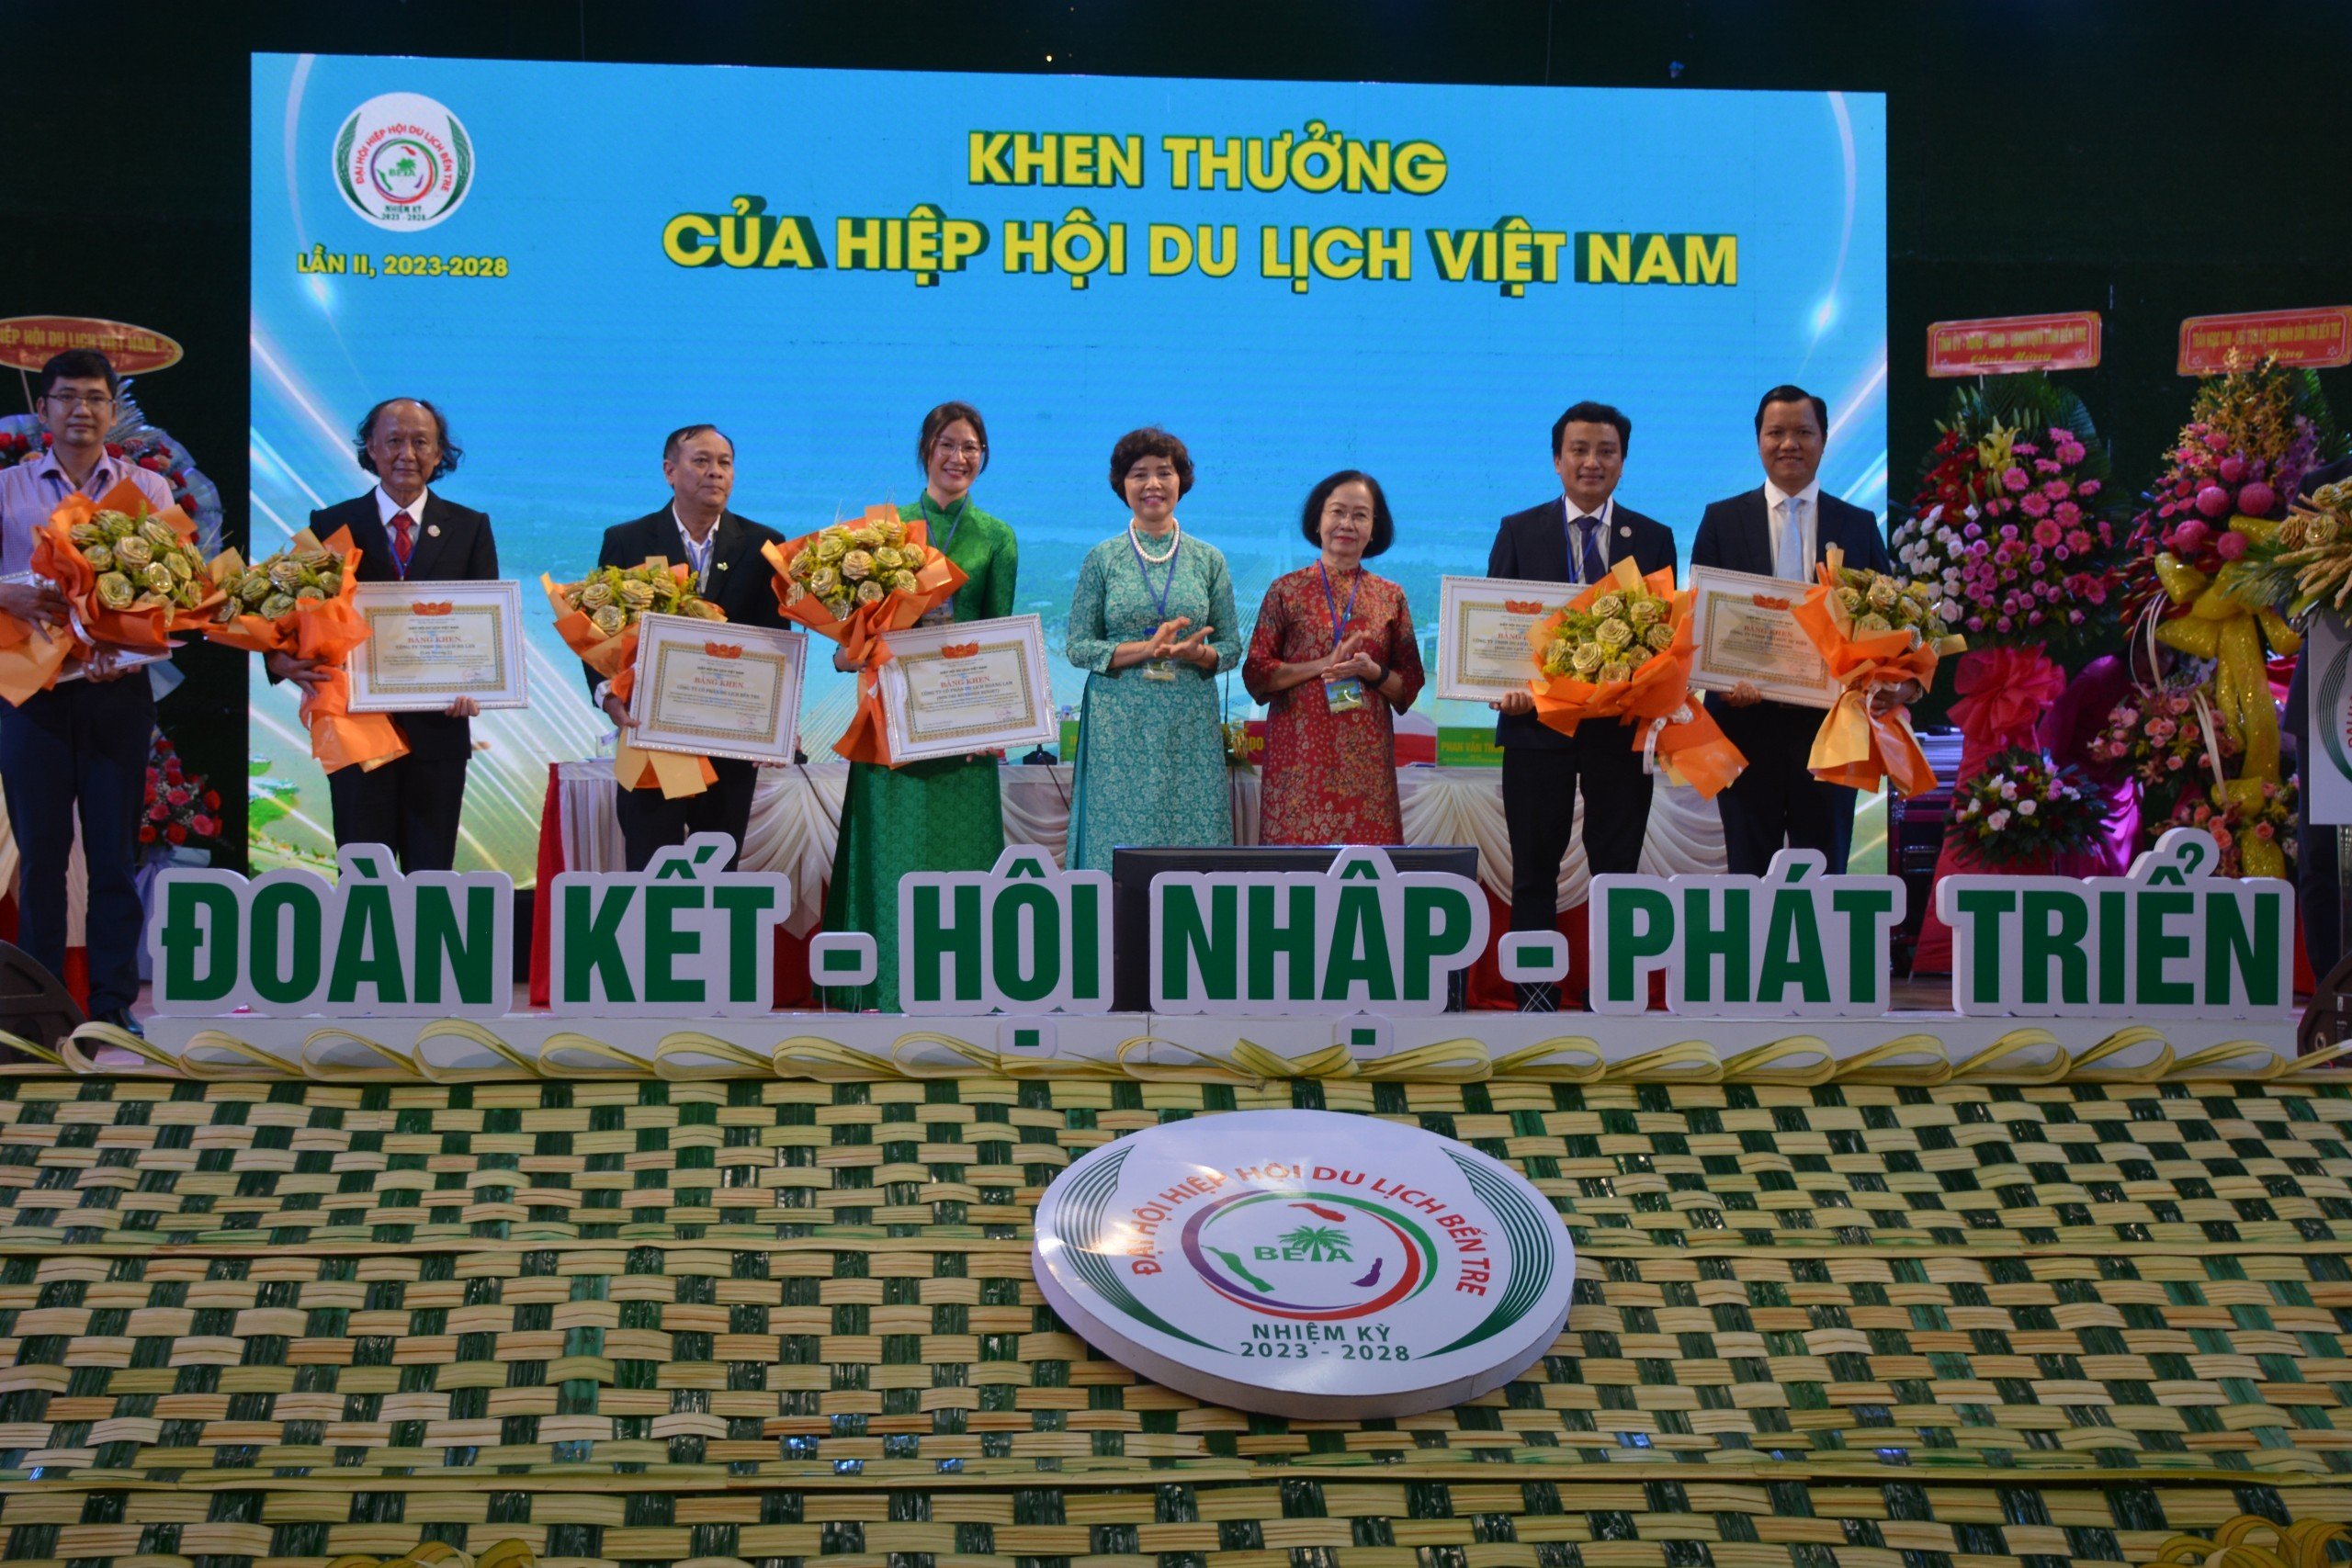  Đại diện lãnh đạo HHDL Việt Nam trao Bằng khen cho các tập thể, cá nhân có nhiều đóng góp cho ngành Du lịch Bến Tre trong thời gian qua.